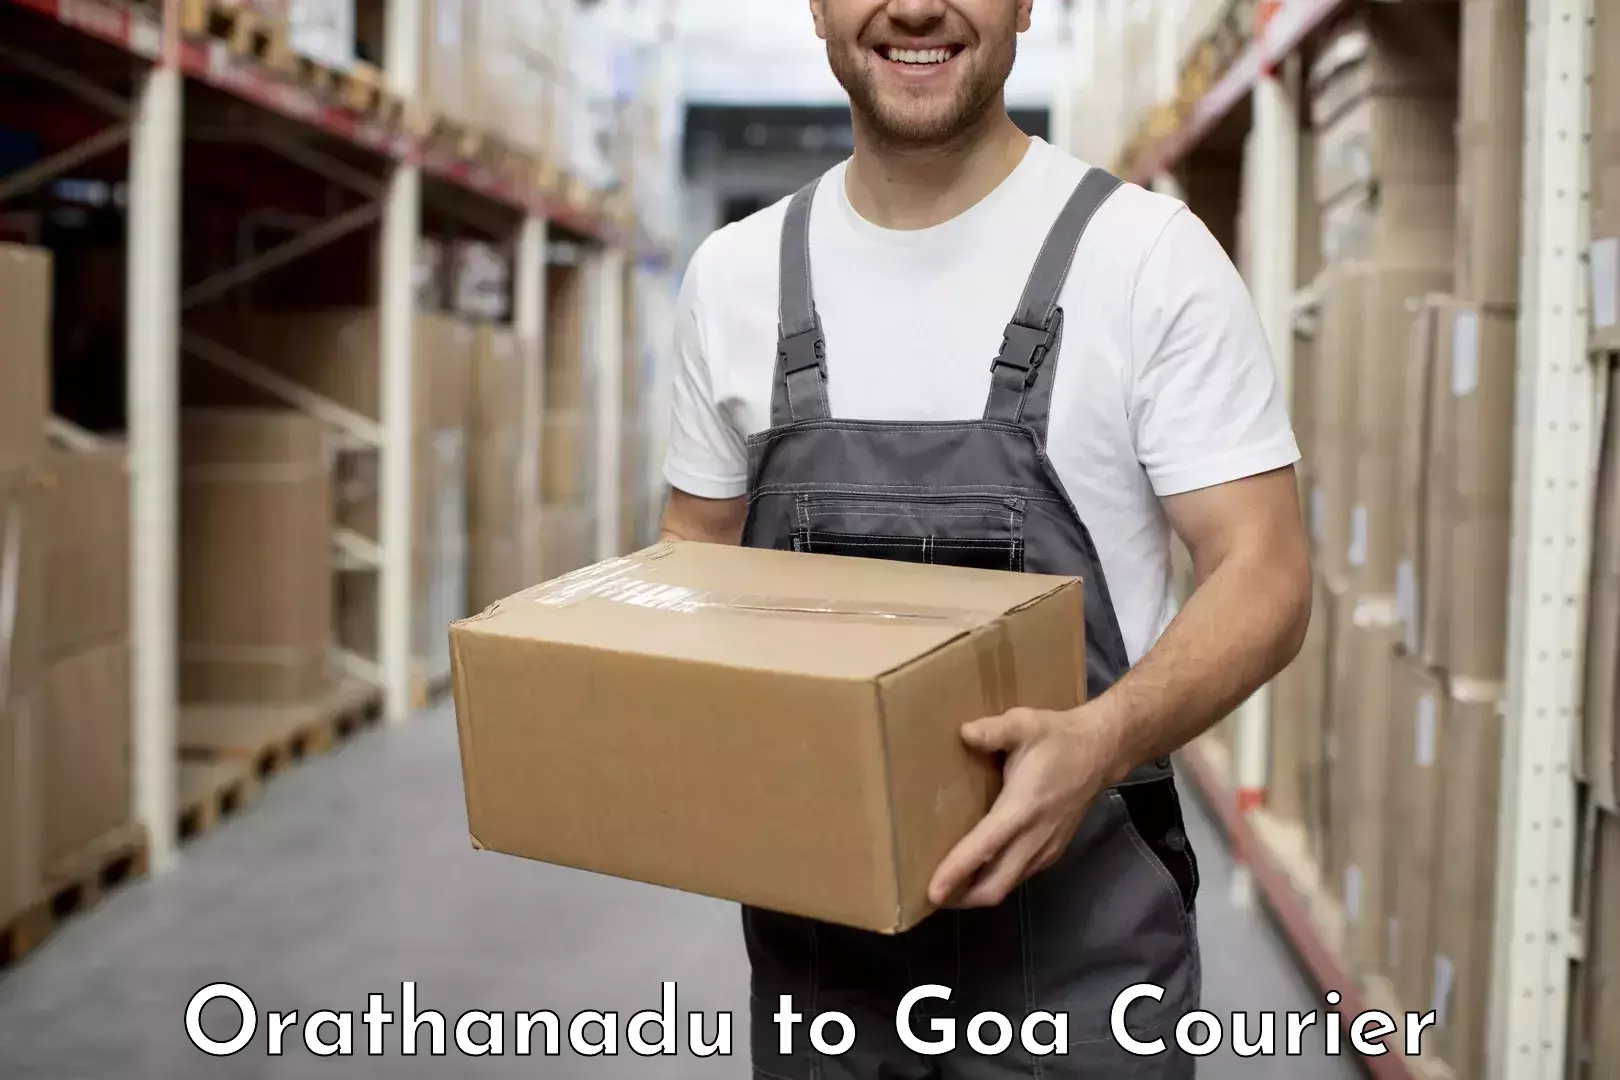 Global logistics network Orathanadu to Canacona